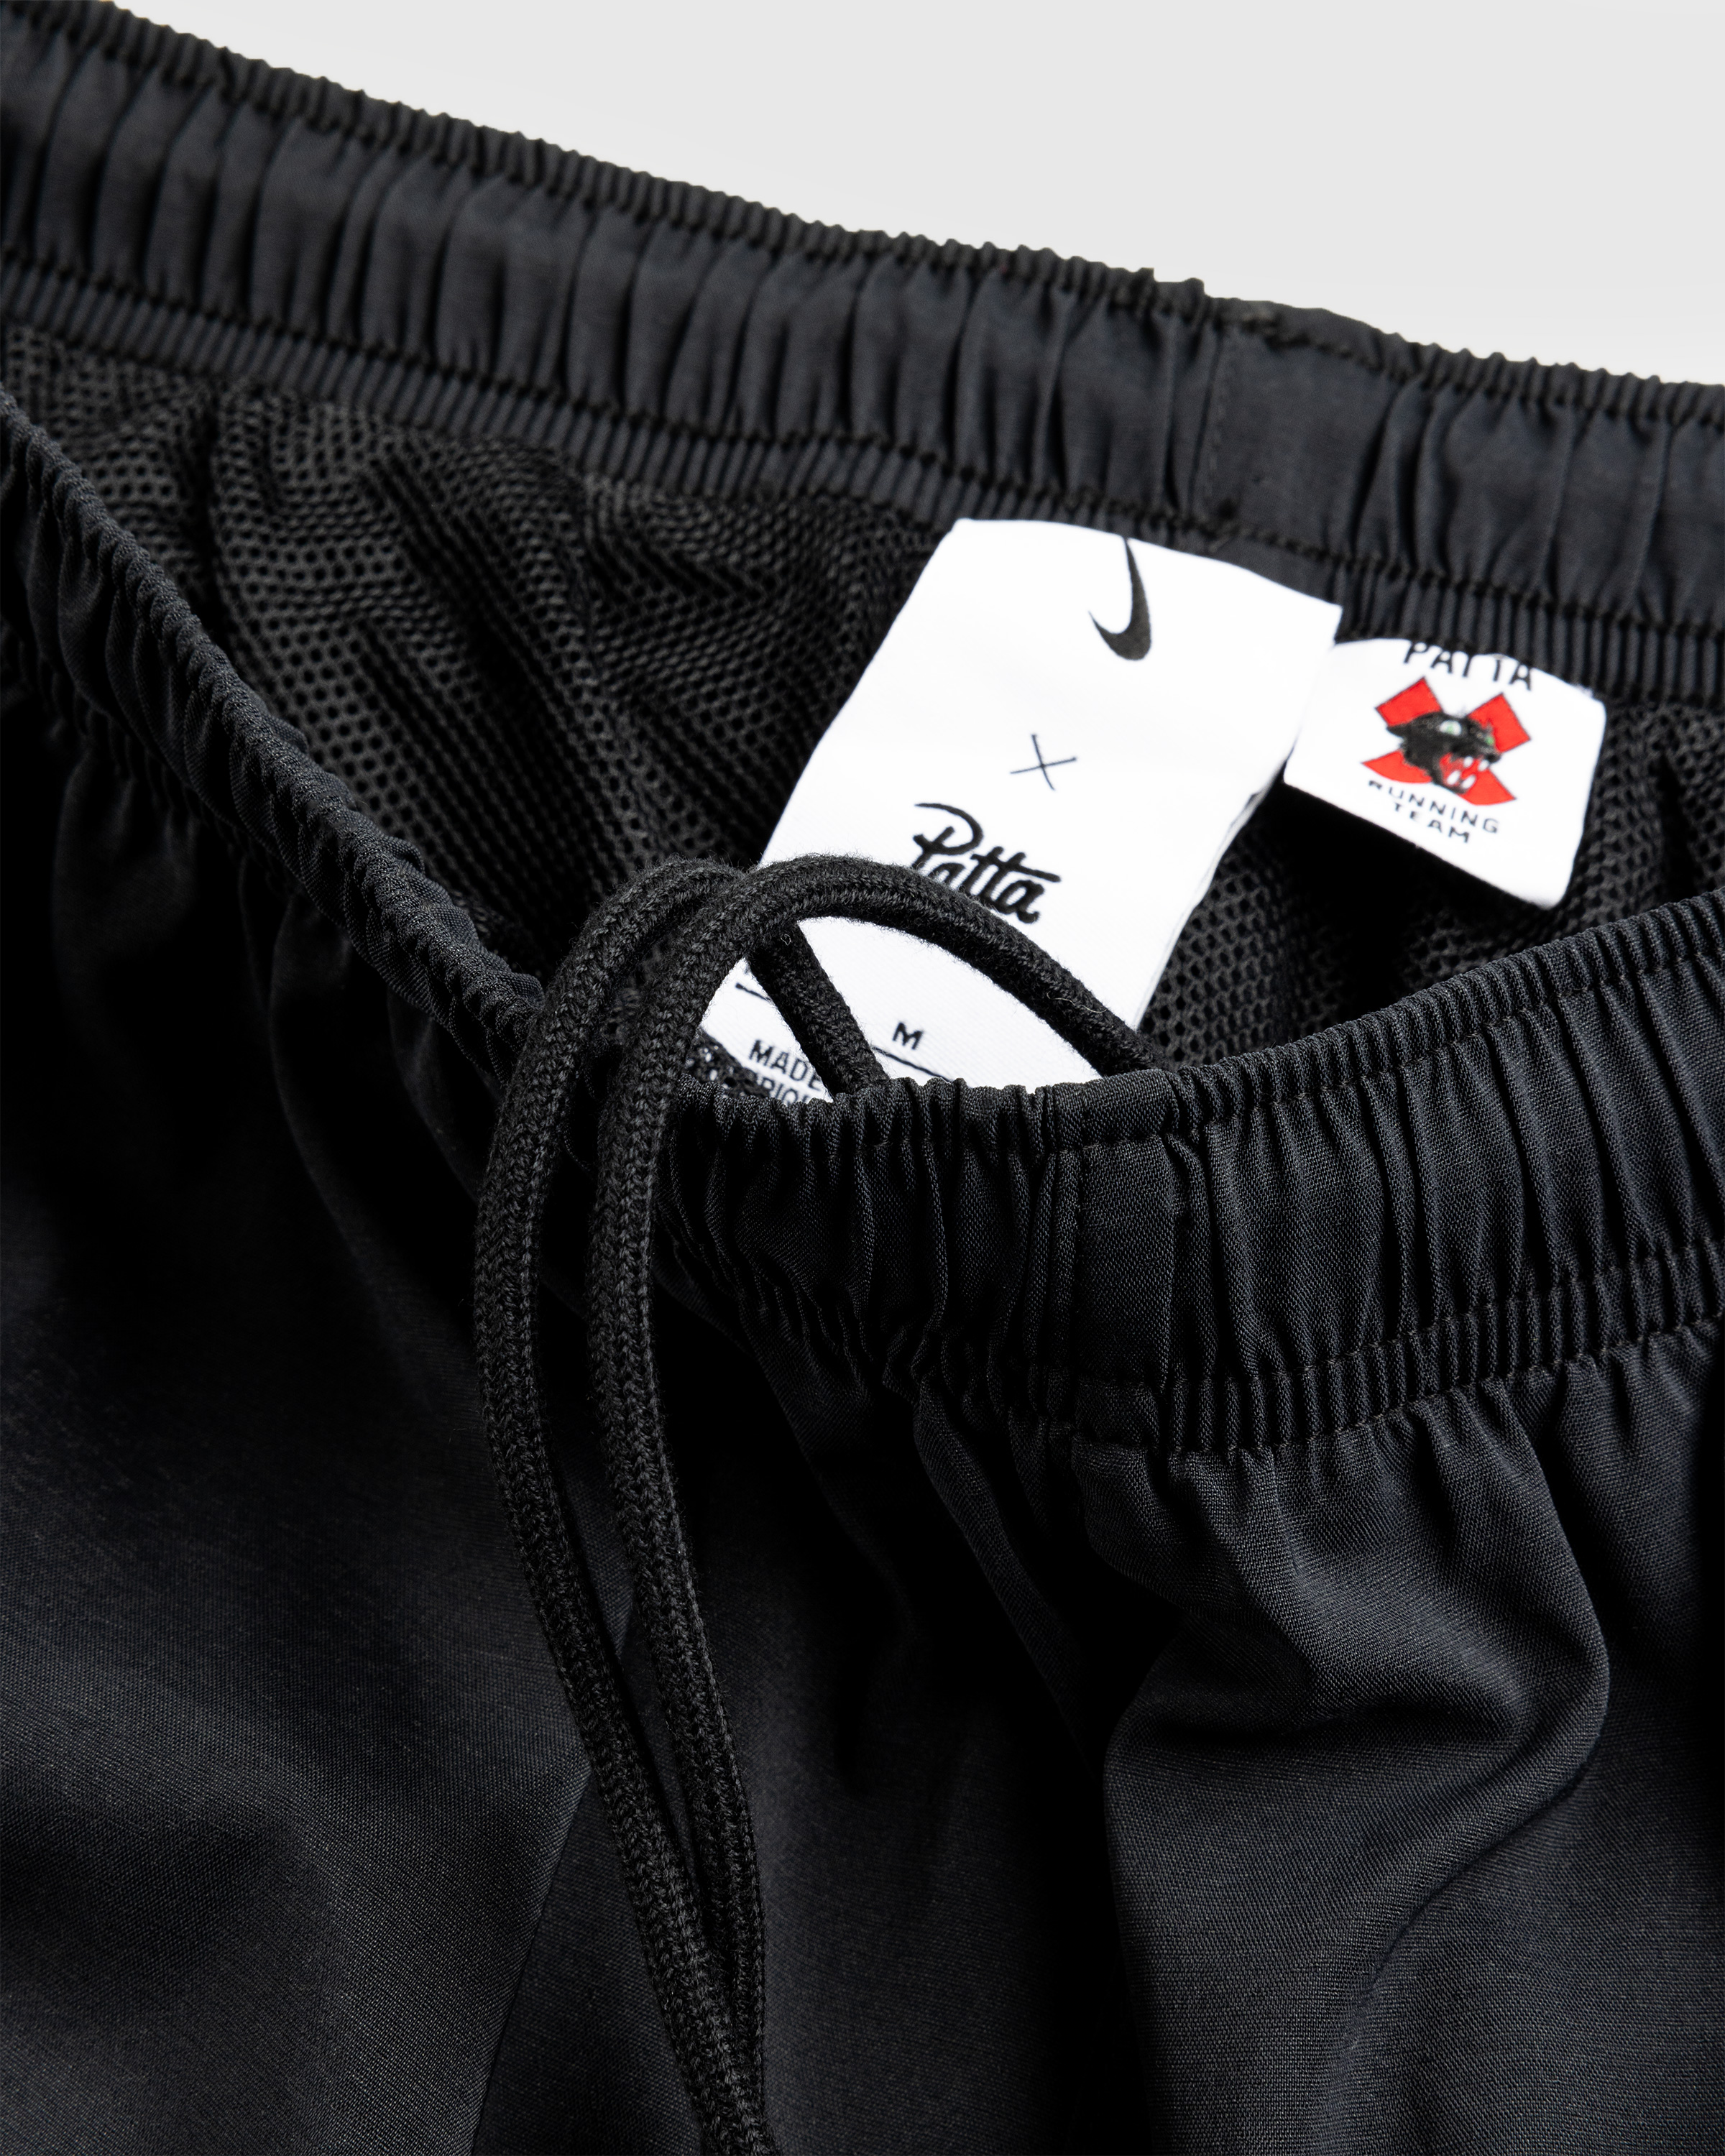 Nike x Patta – Men's Track Pants Black - Track Pants - Black - Image 8